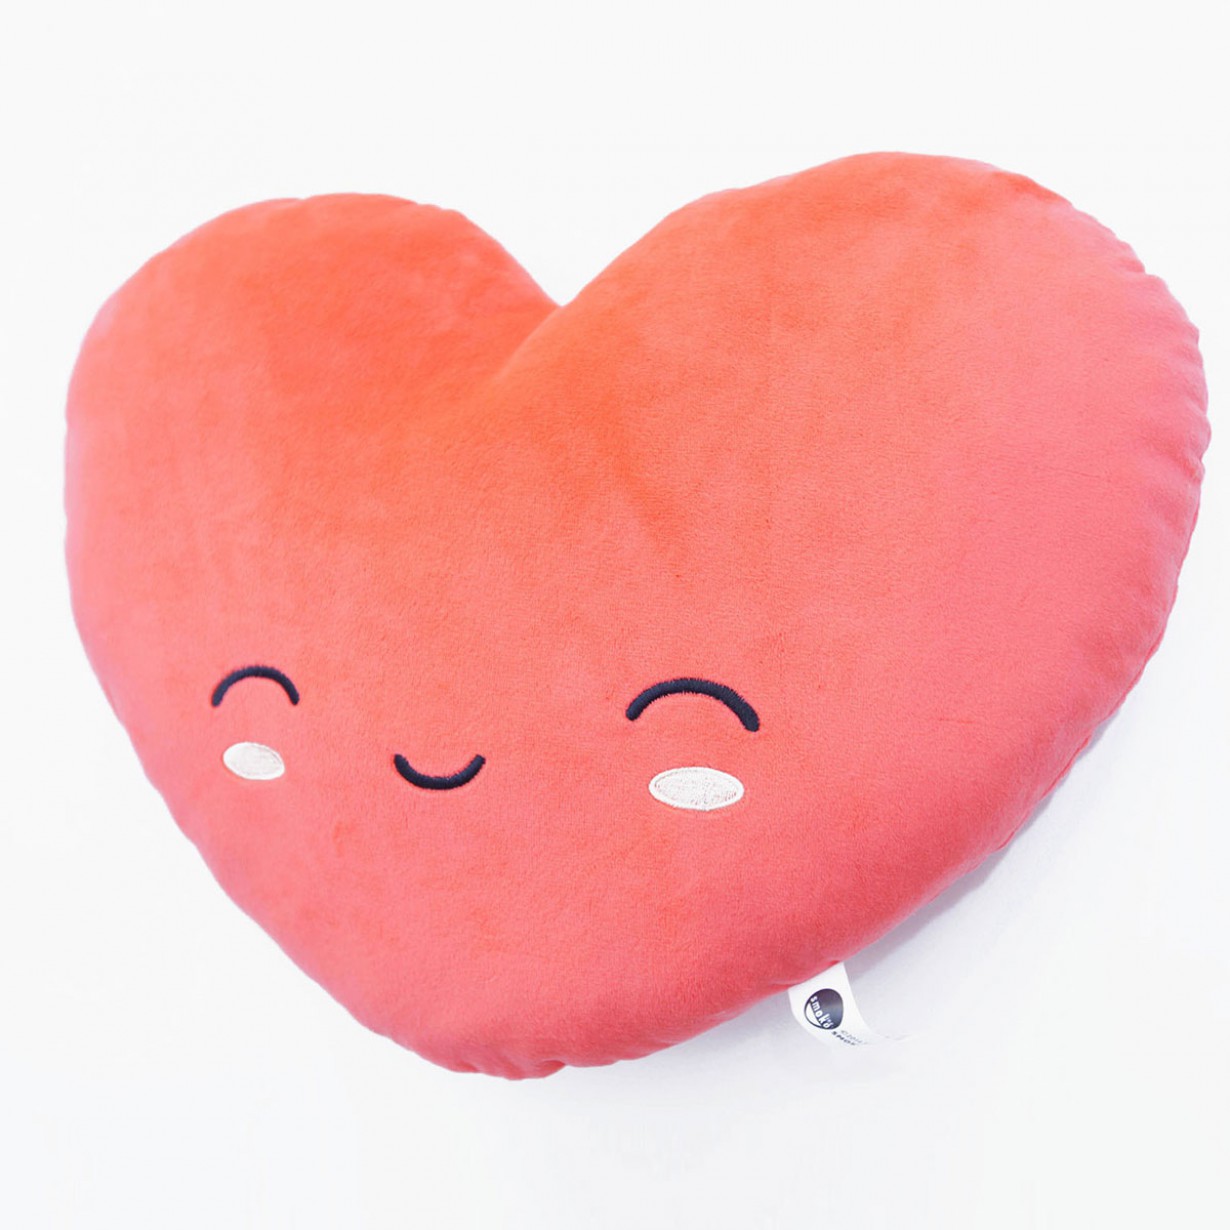 San Valentino 2016, il cuscino termico a forma di cuore